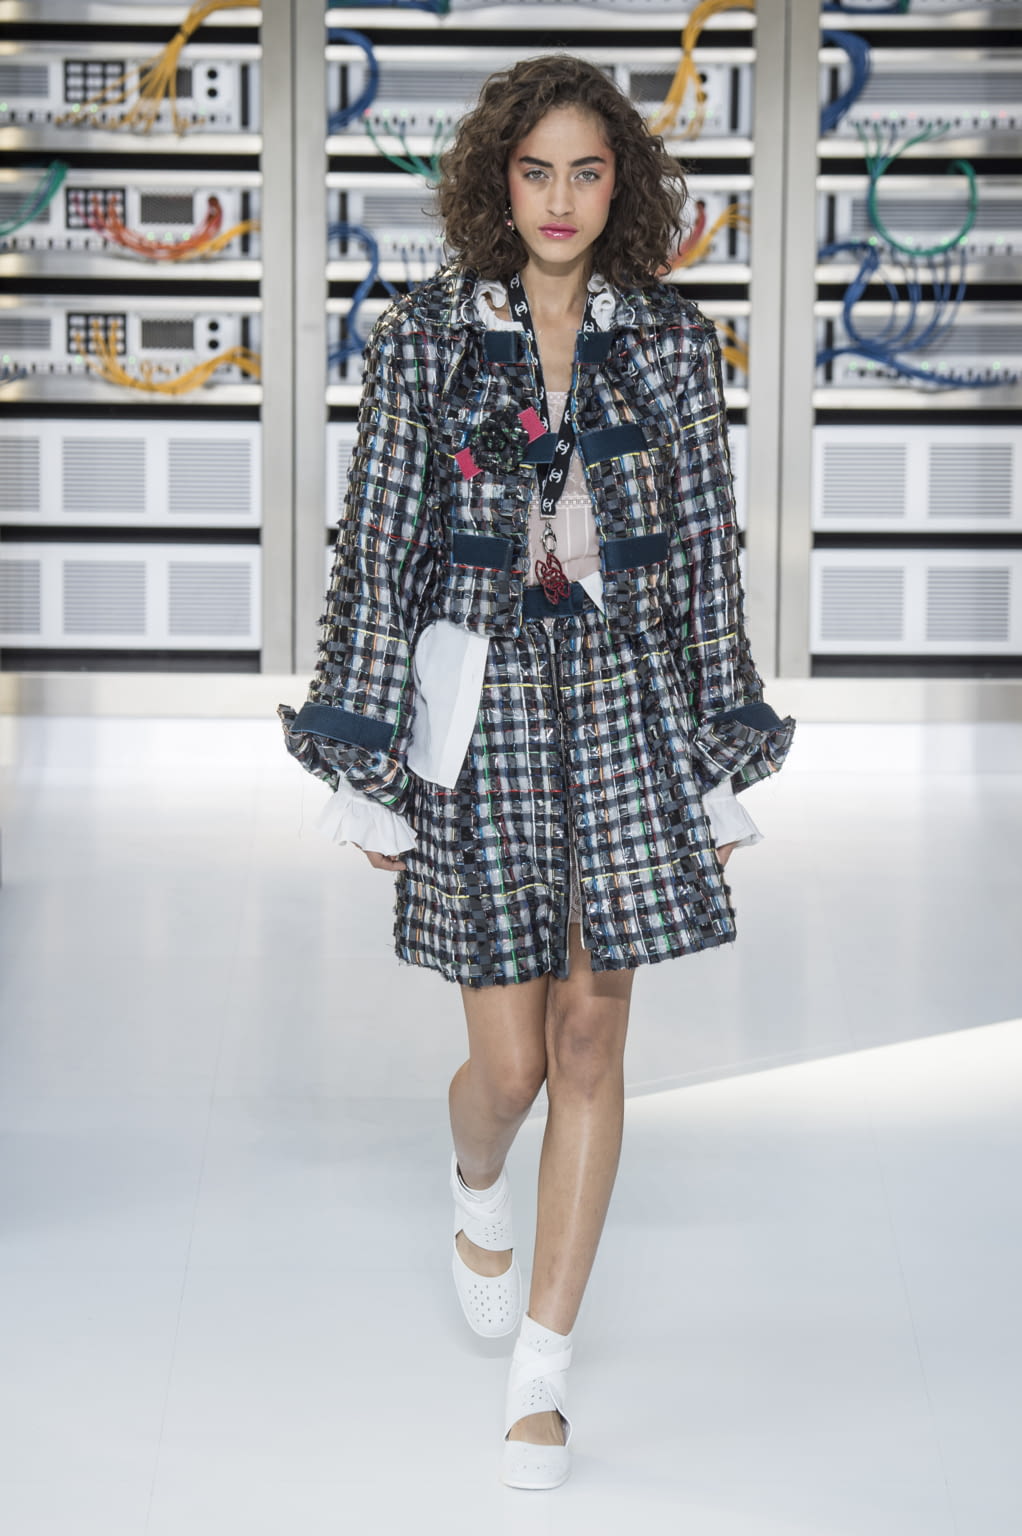 Chanel S/S 17 womenswear #6 - Tagwalk: The Fashion Search Engine